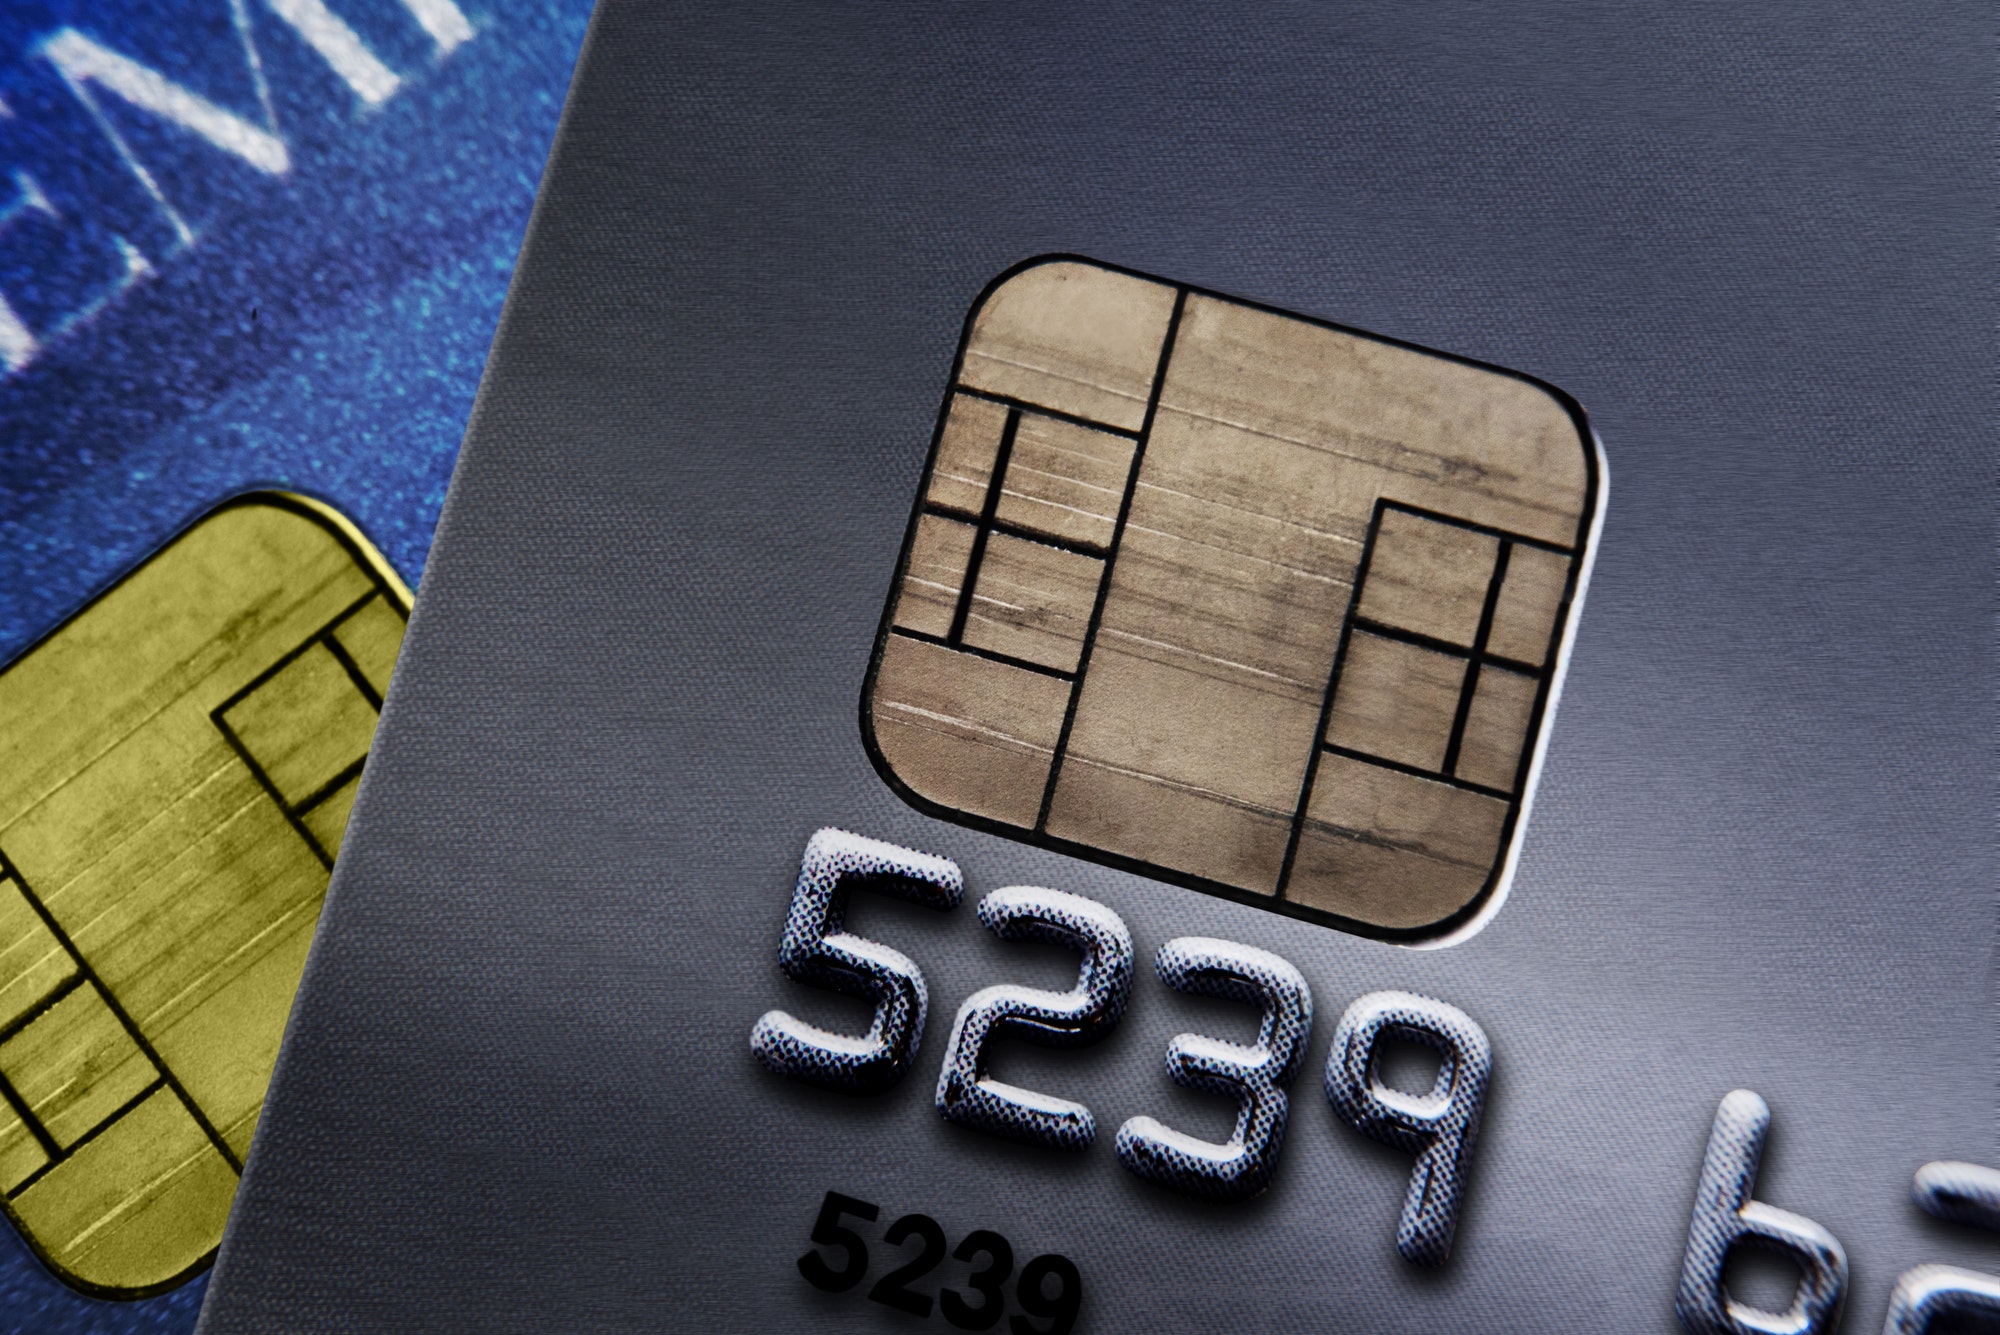 Closeup of credit cards